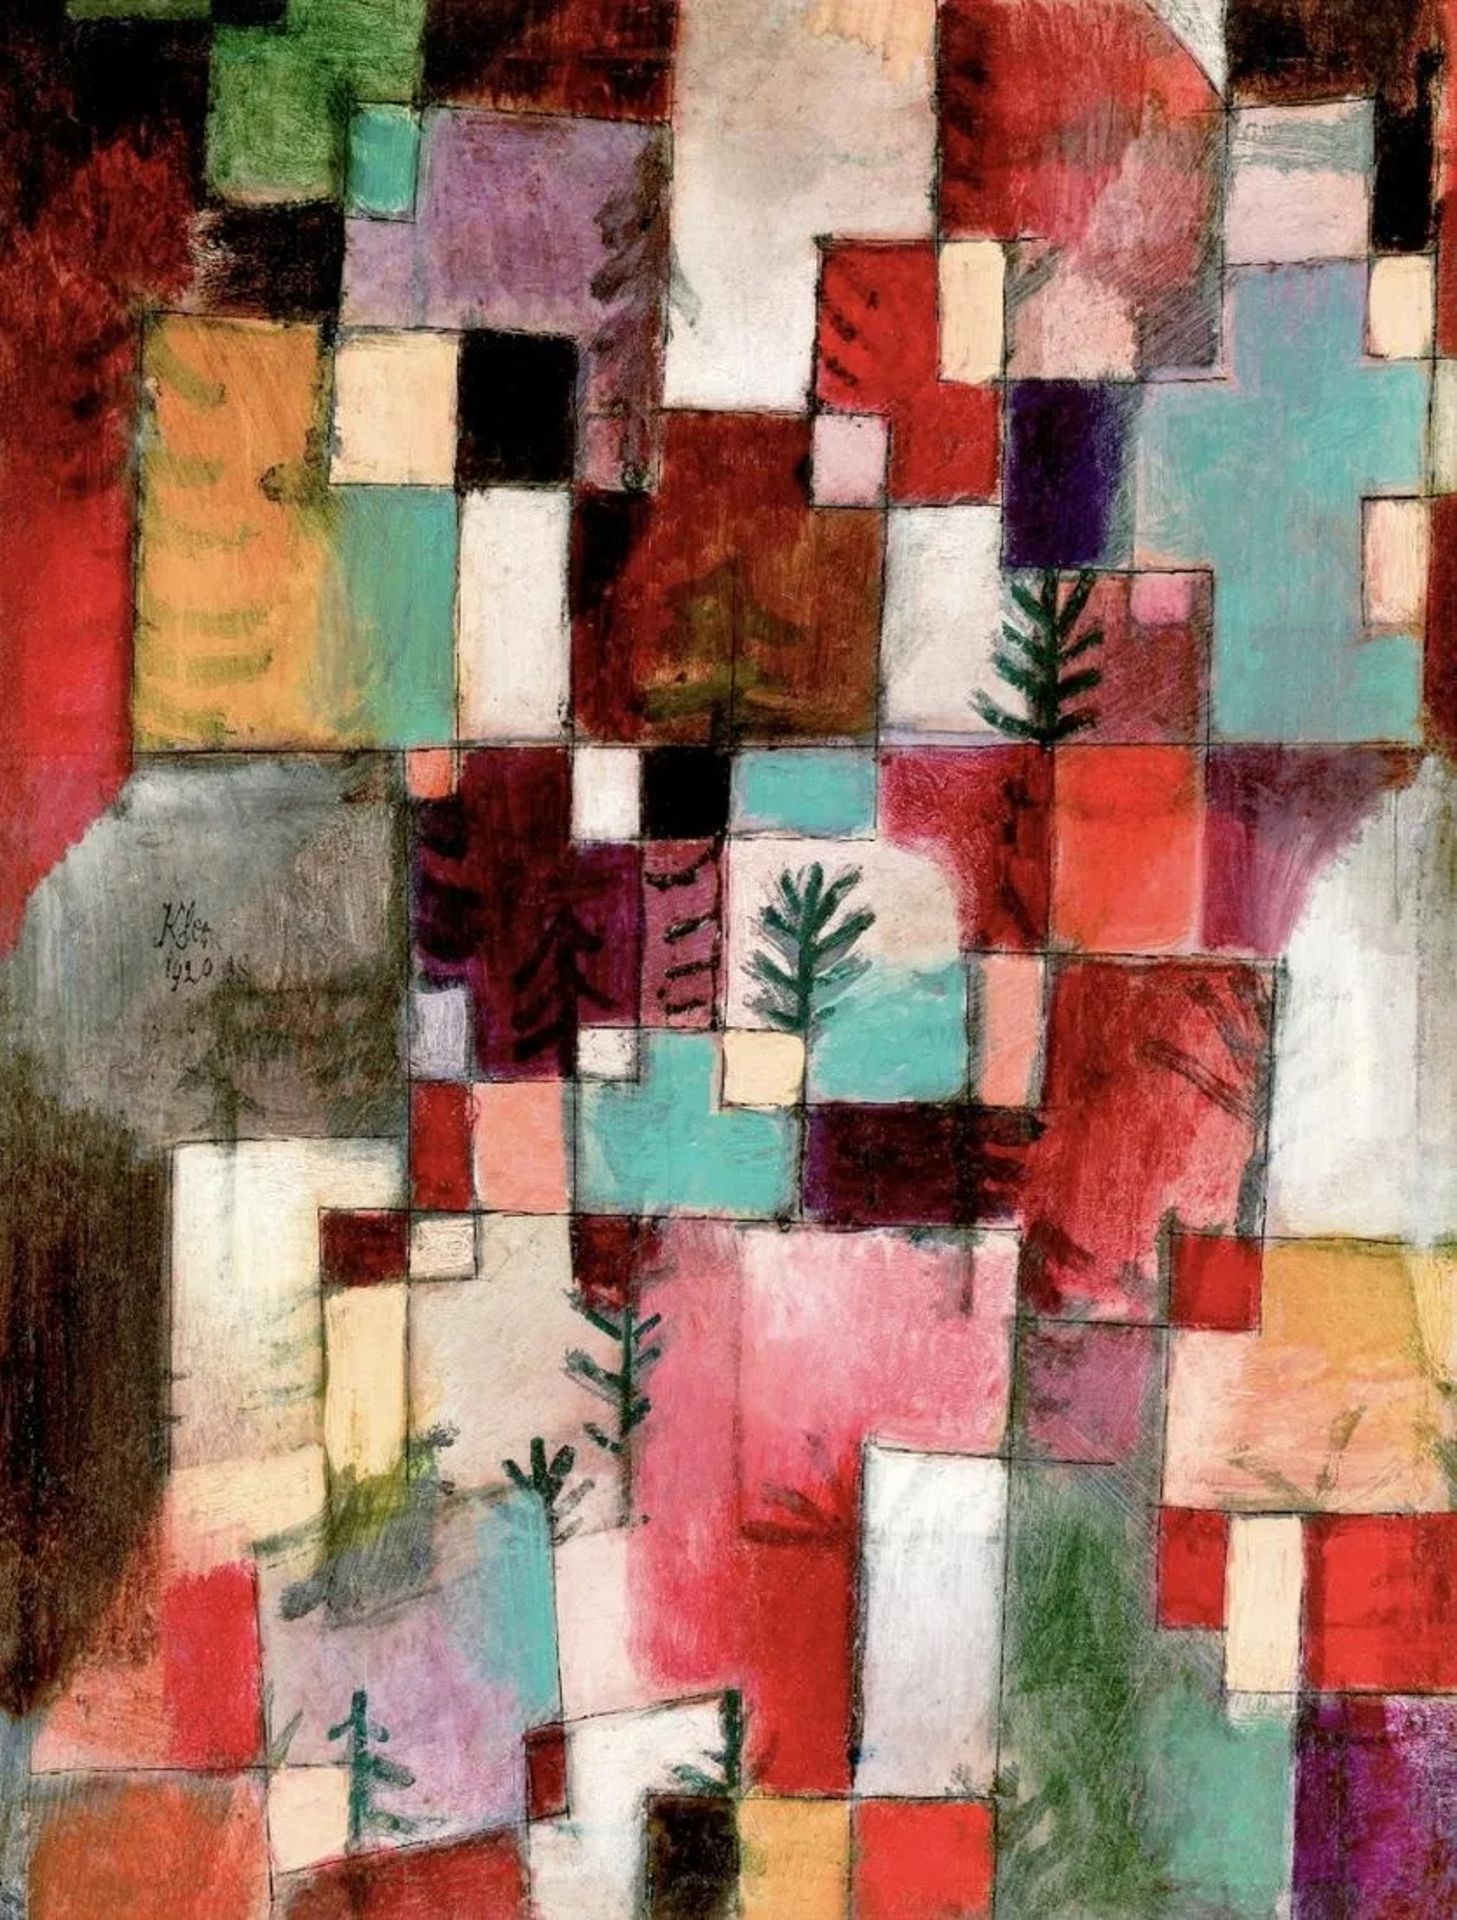 Paul Klee "1920" Print
